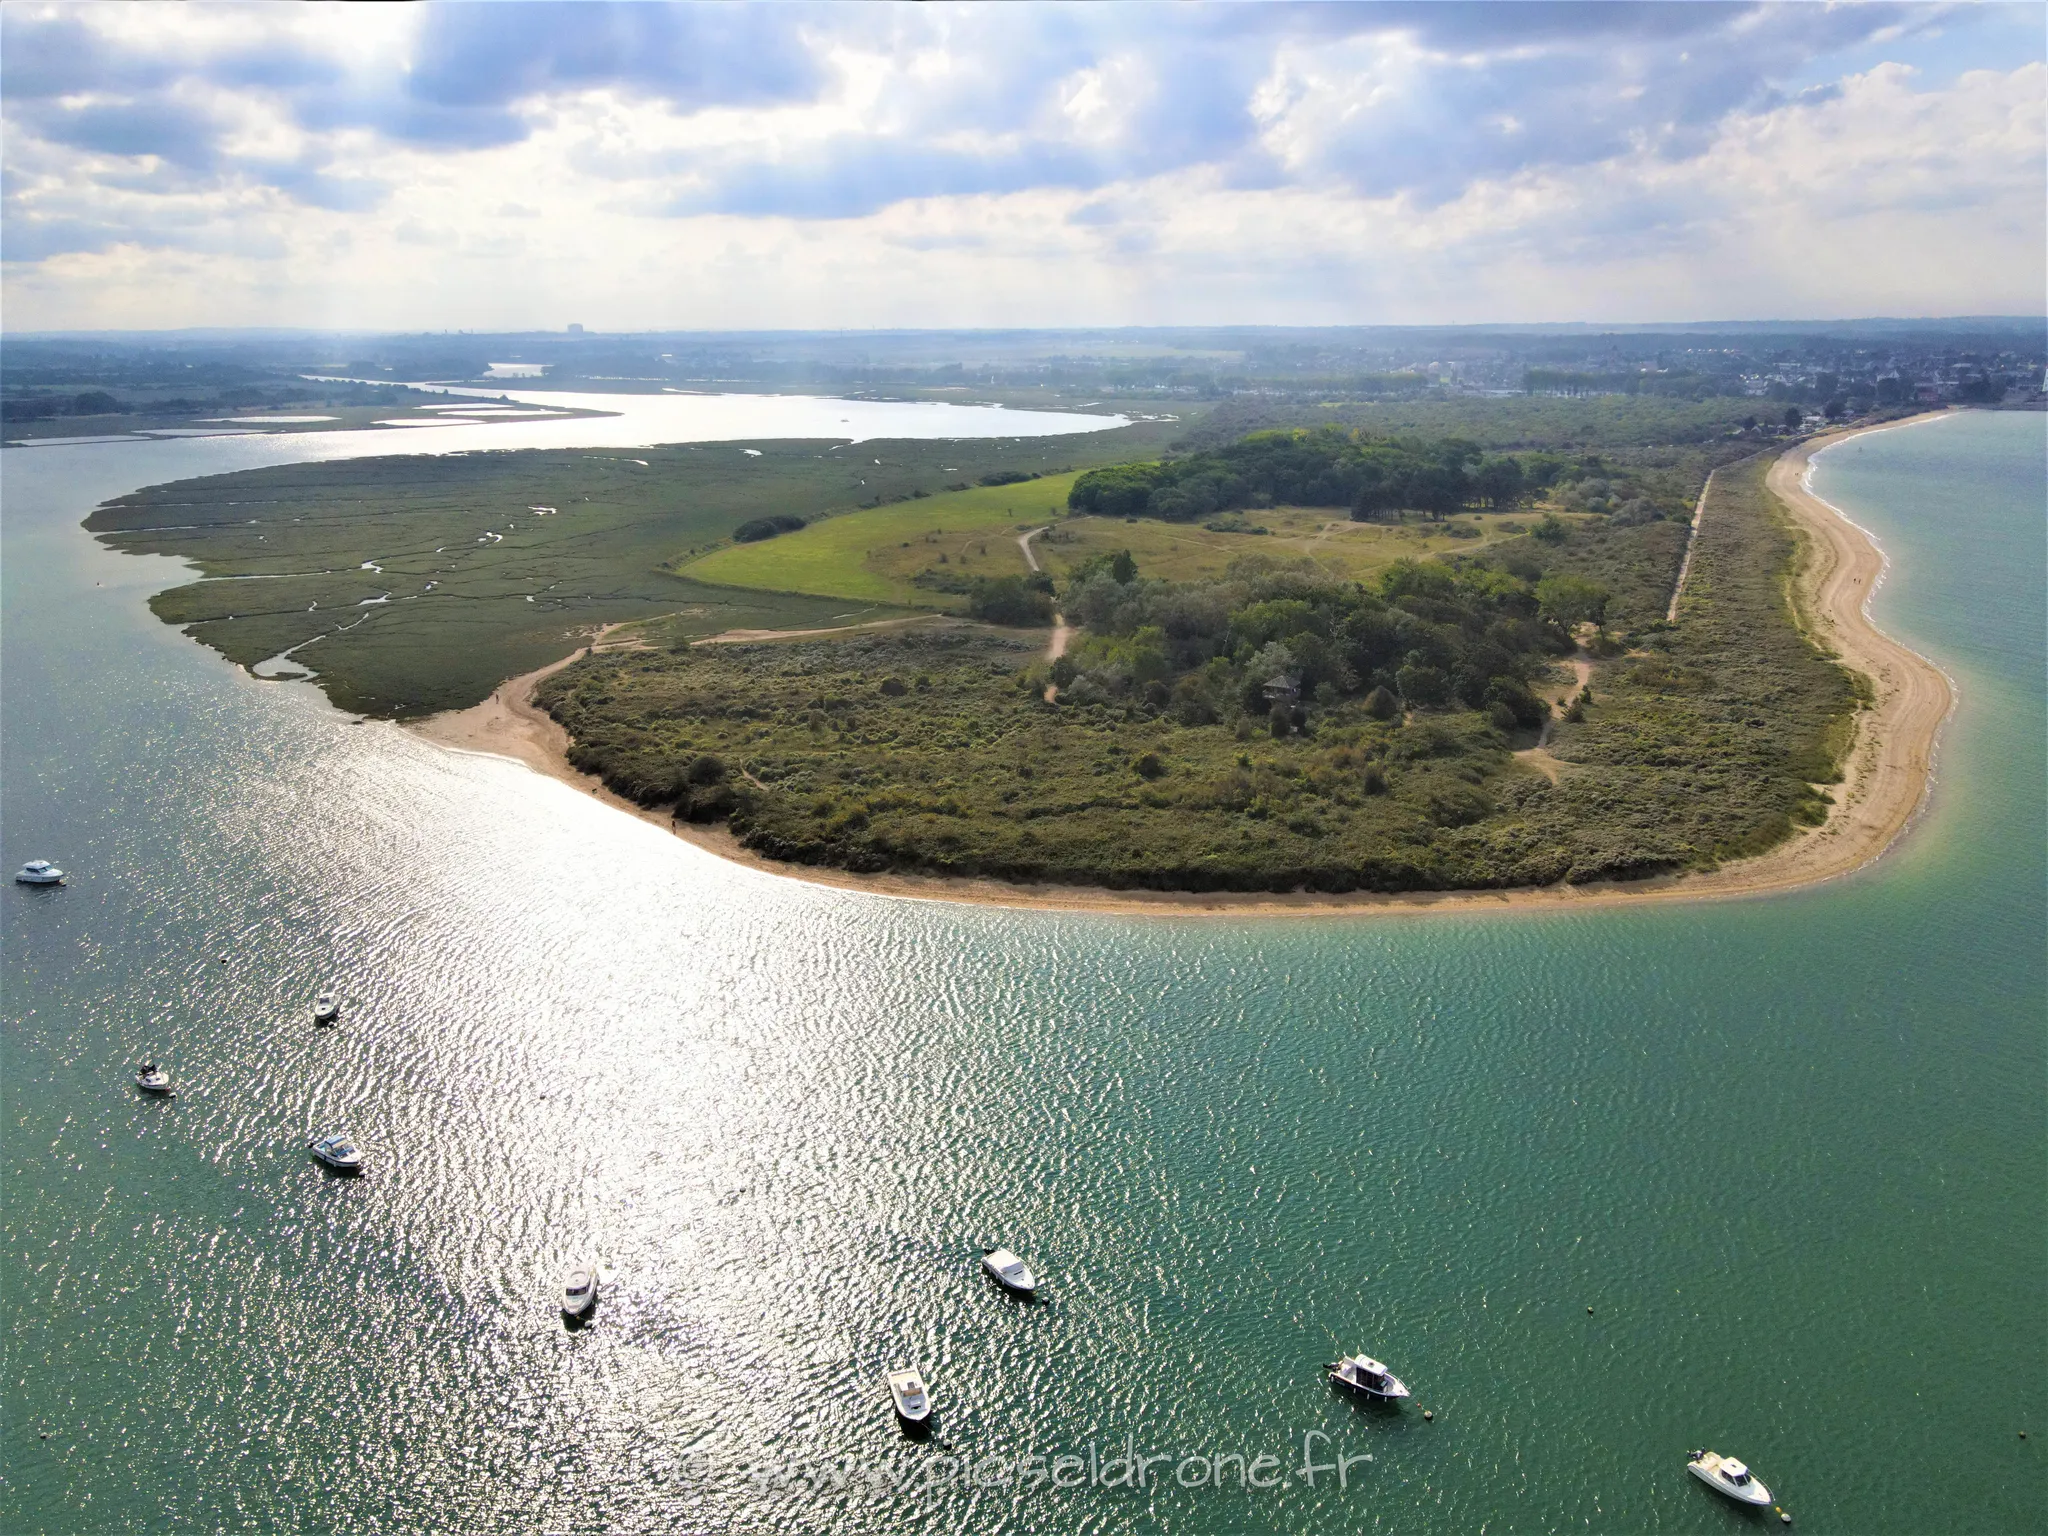 Prise de vues aérienne, photo aérienne de paysage, estuaire de l'Orne, Pointe du Siège, Ouistreham, plage, télépilote drone, pilote drone, PICSEL DRONE, CAEN